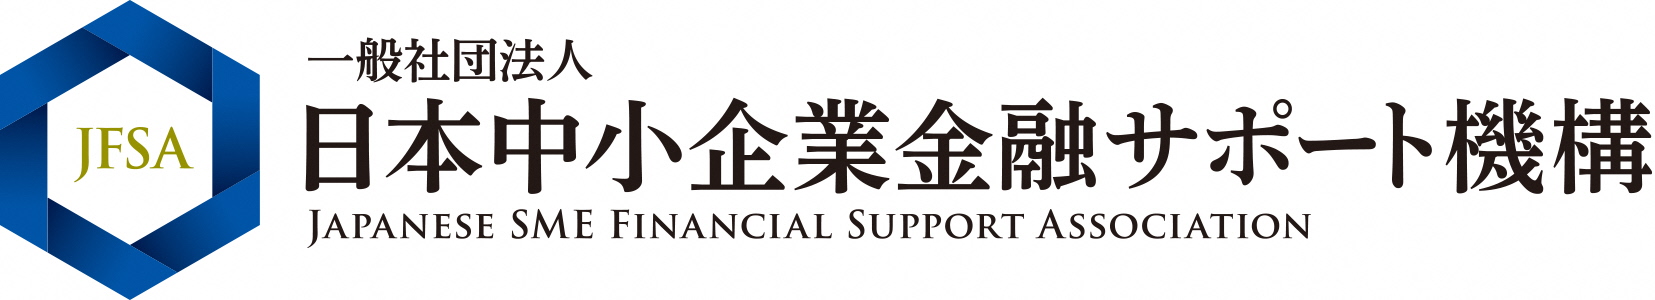 一般社団法人日本中小企業金融サポート機構のロゴマーク